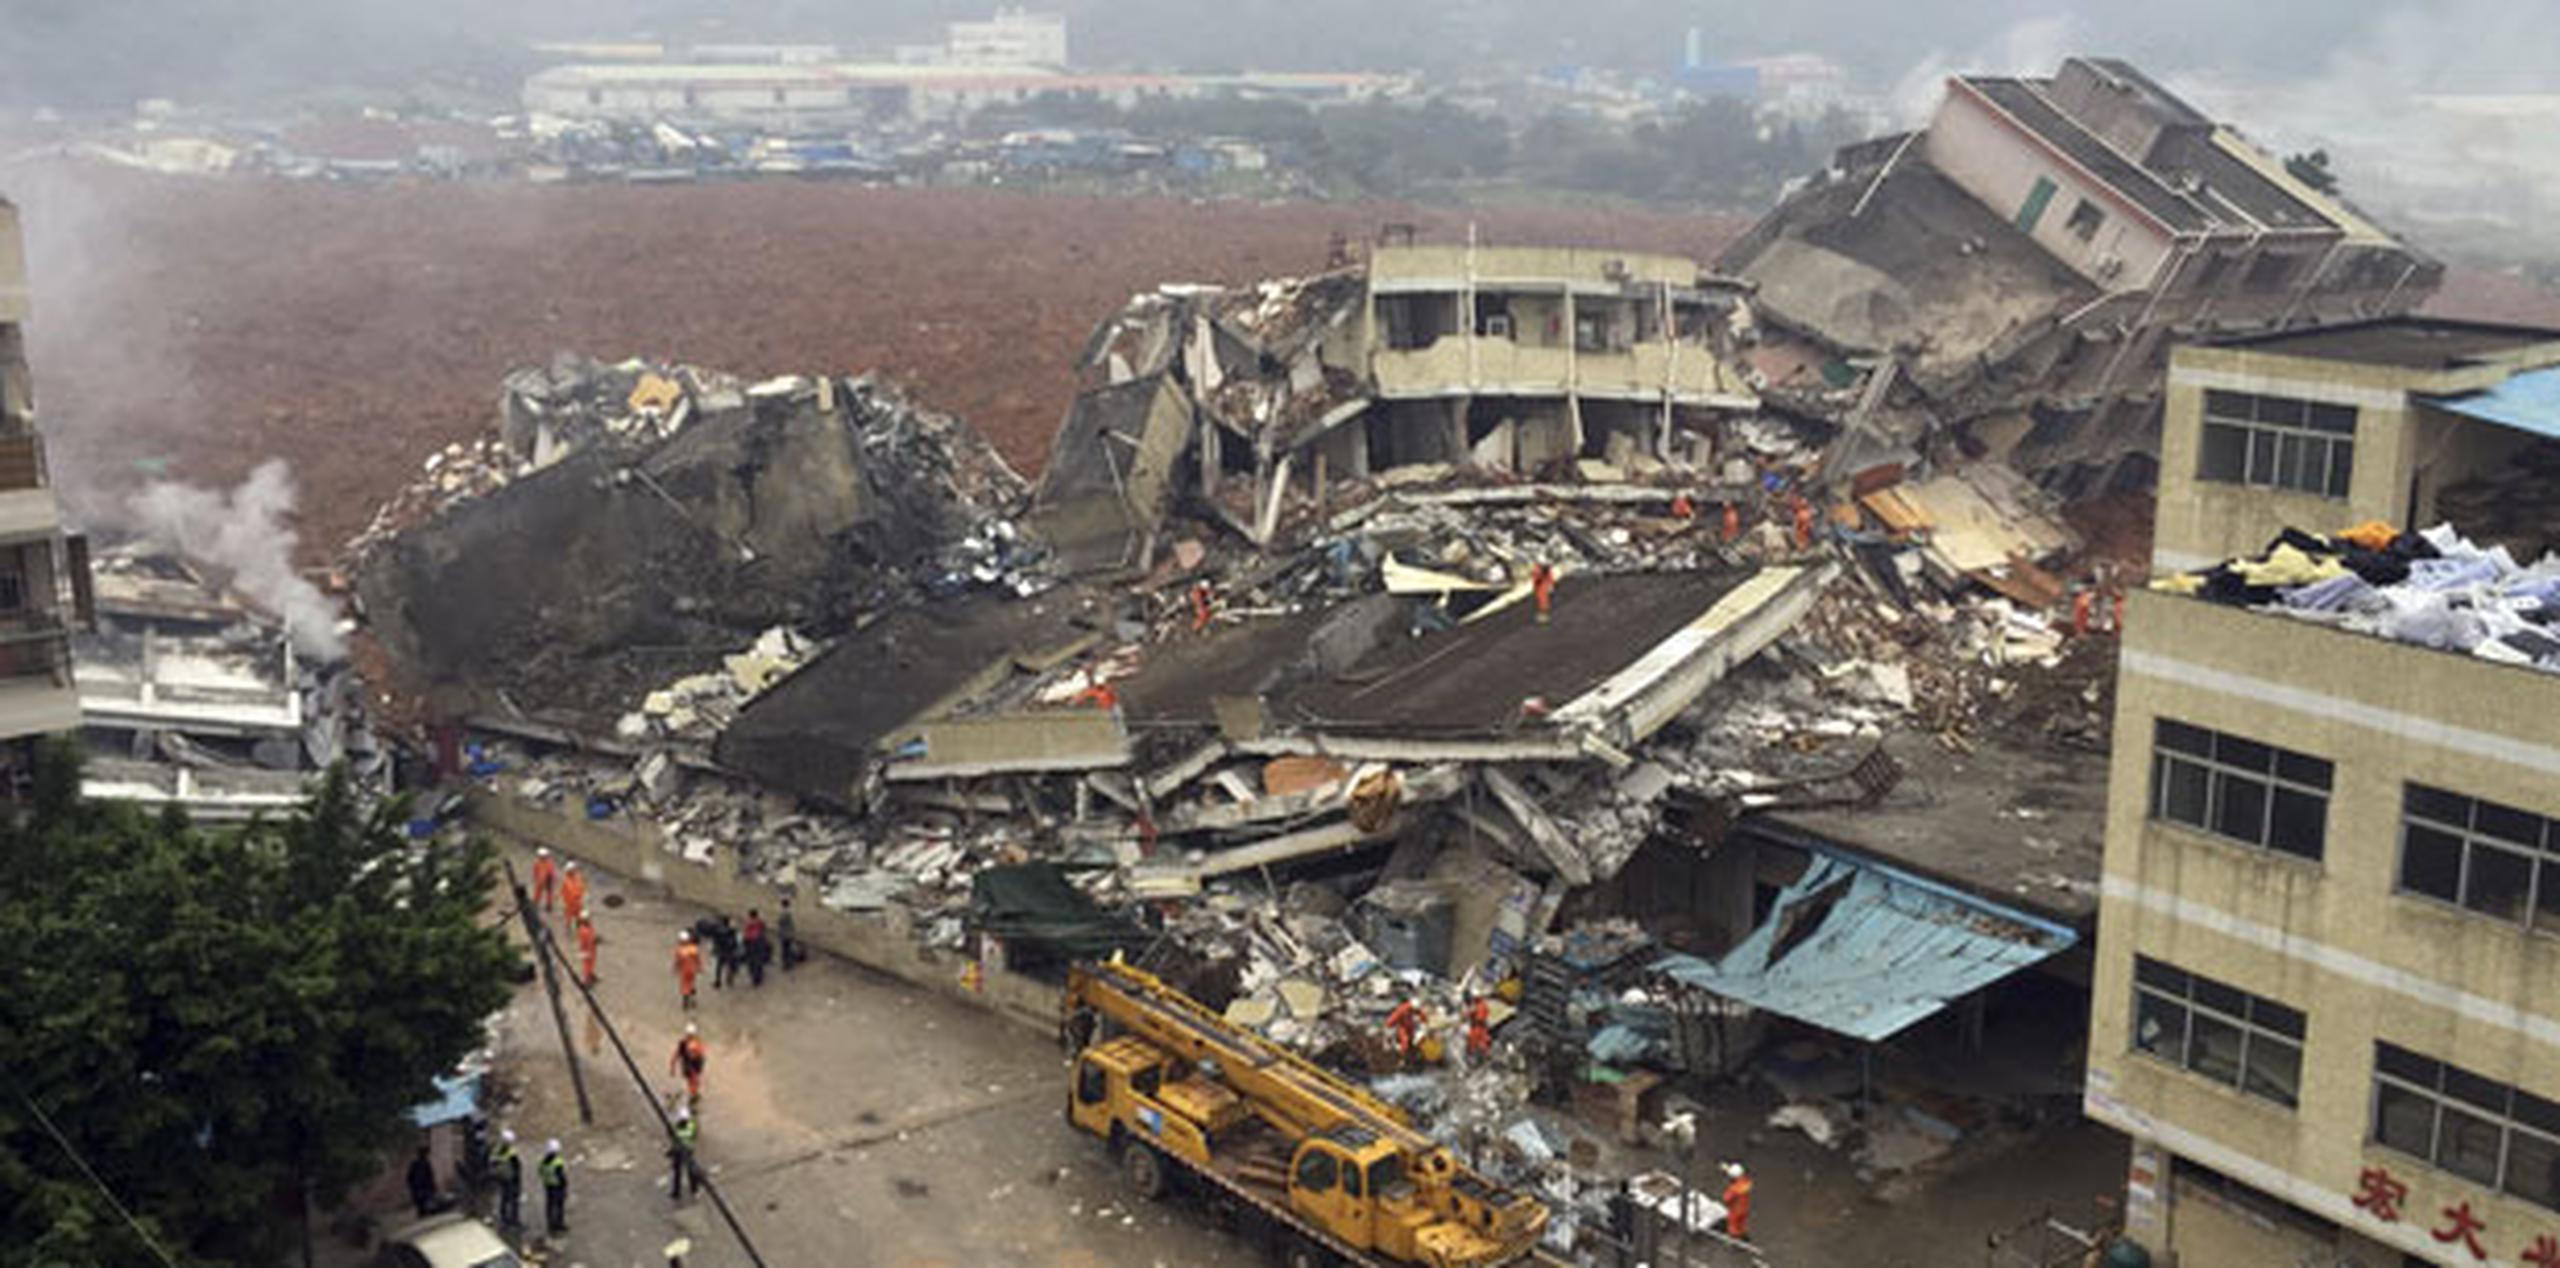 Los bomberos de Shenzhen, en el sur del país, dijeron que una estructura se derrumbó, pero que el alud había afectado una zona muy grande. (Chinatopix vía AP)